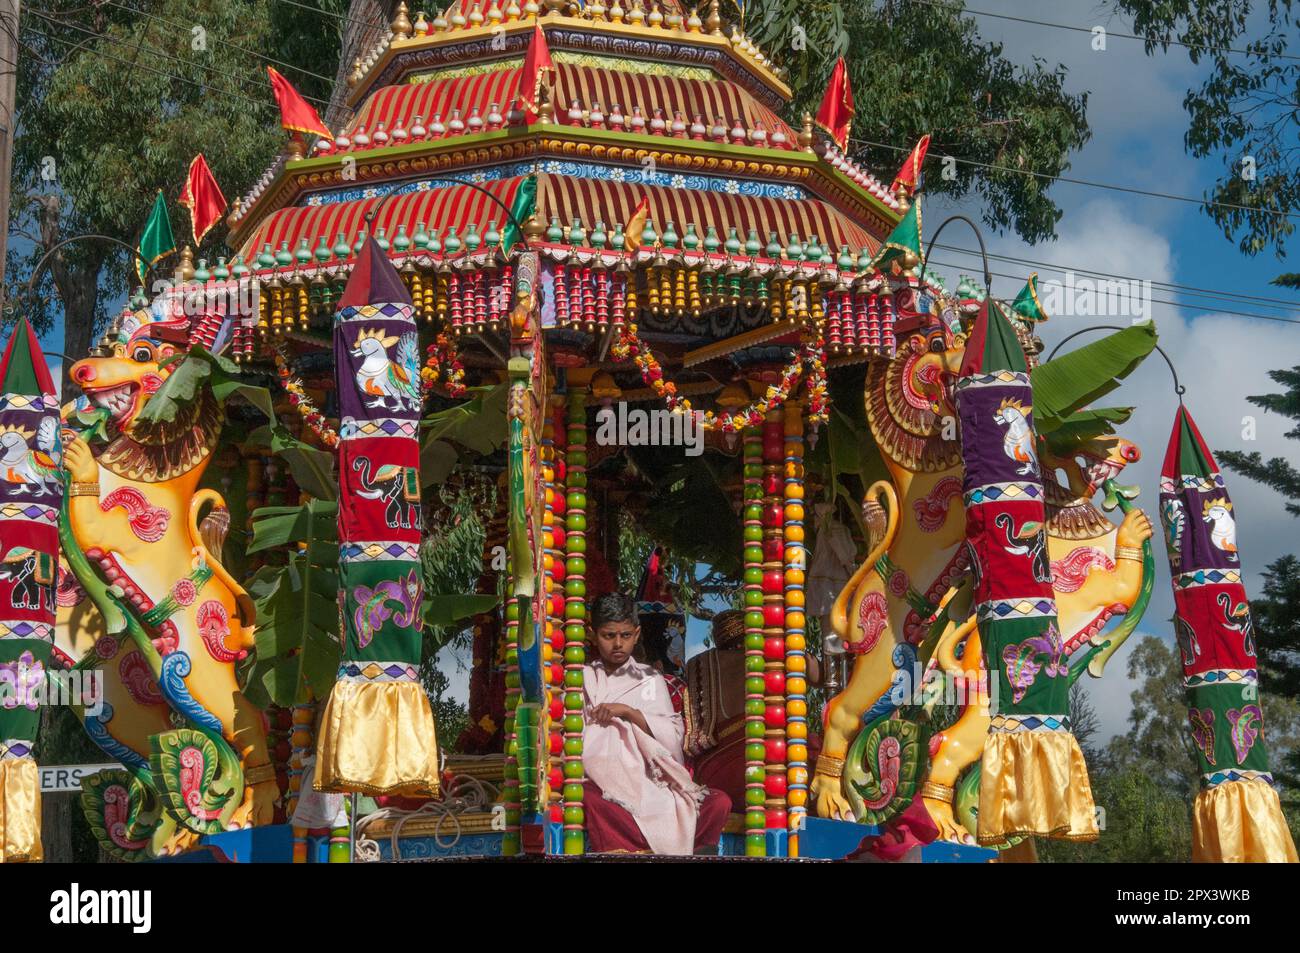 Der Streitwagen, in dem sich die Gottheit Ganesha befindet, wird beim Mahotsavam Chariot Festival 2023 in Melbourne, Australien, aus dem Tempel gezogen Stockfoto